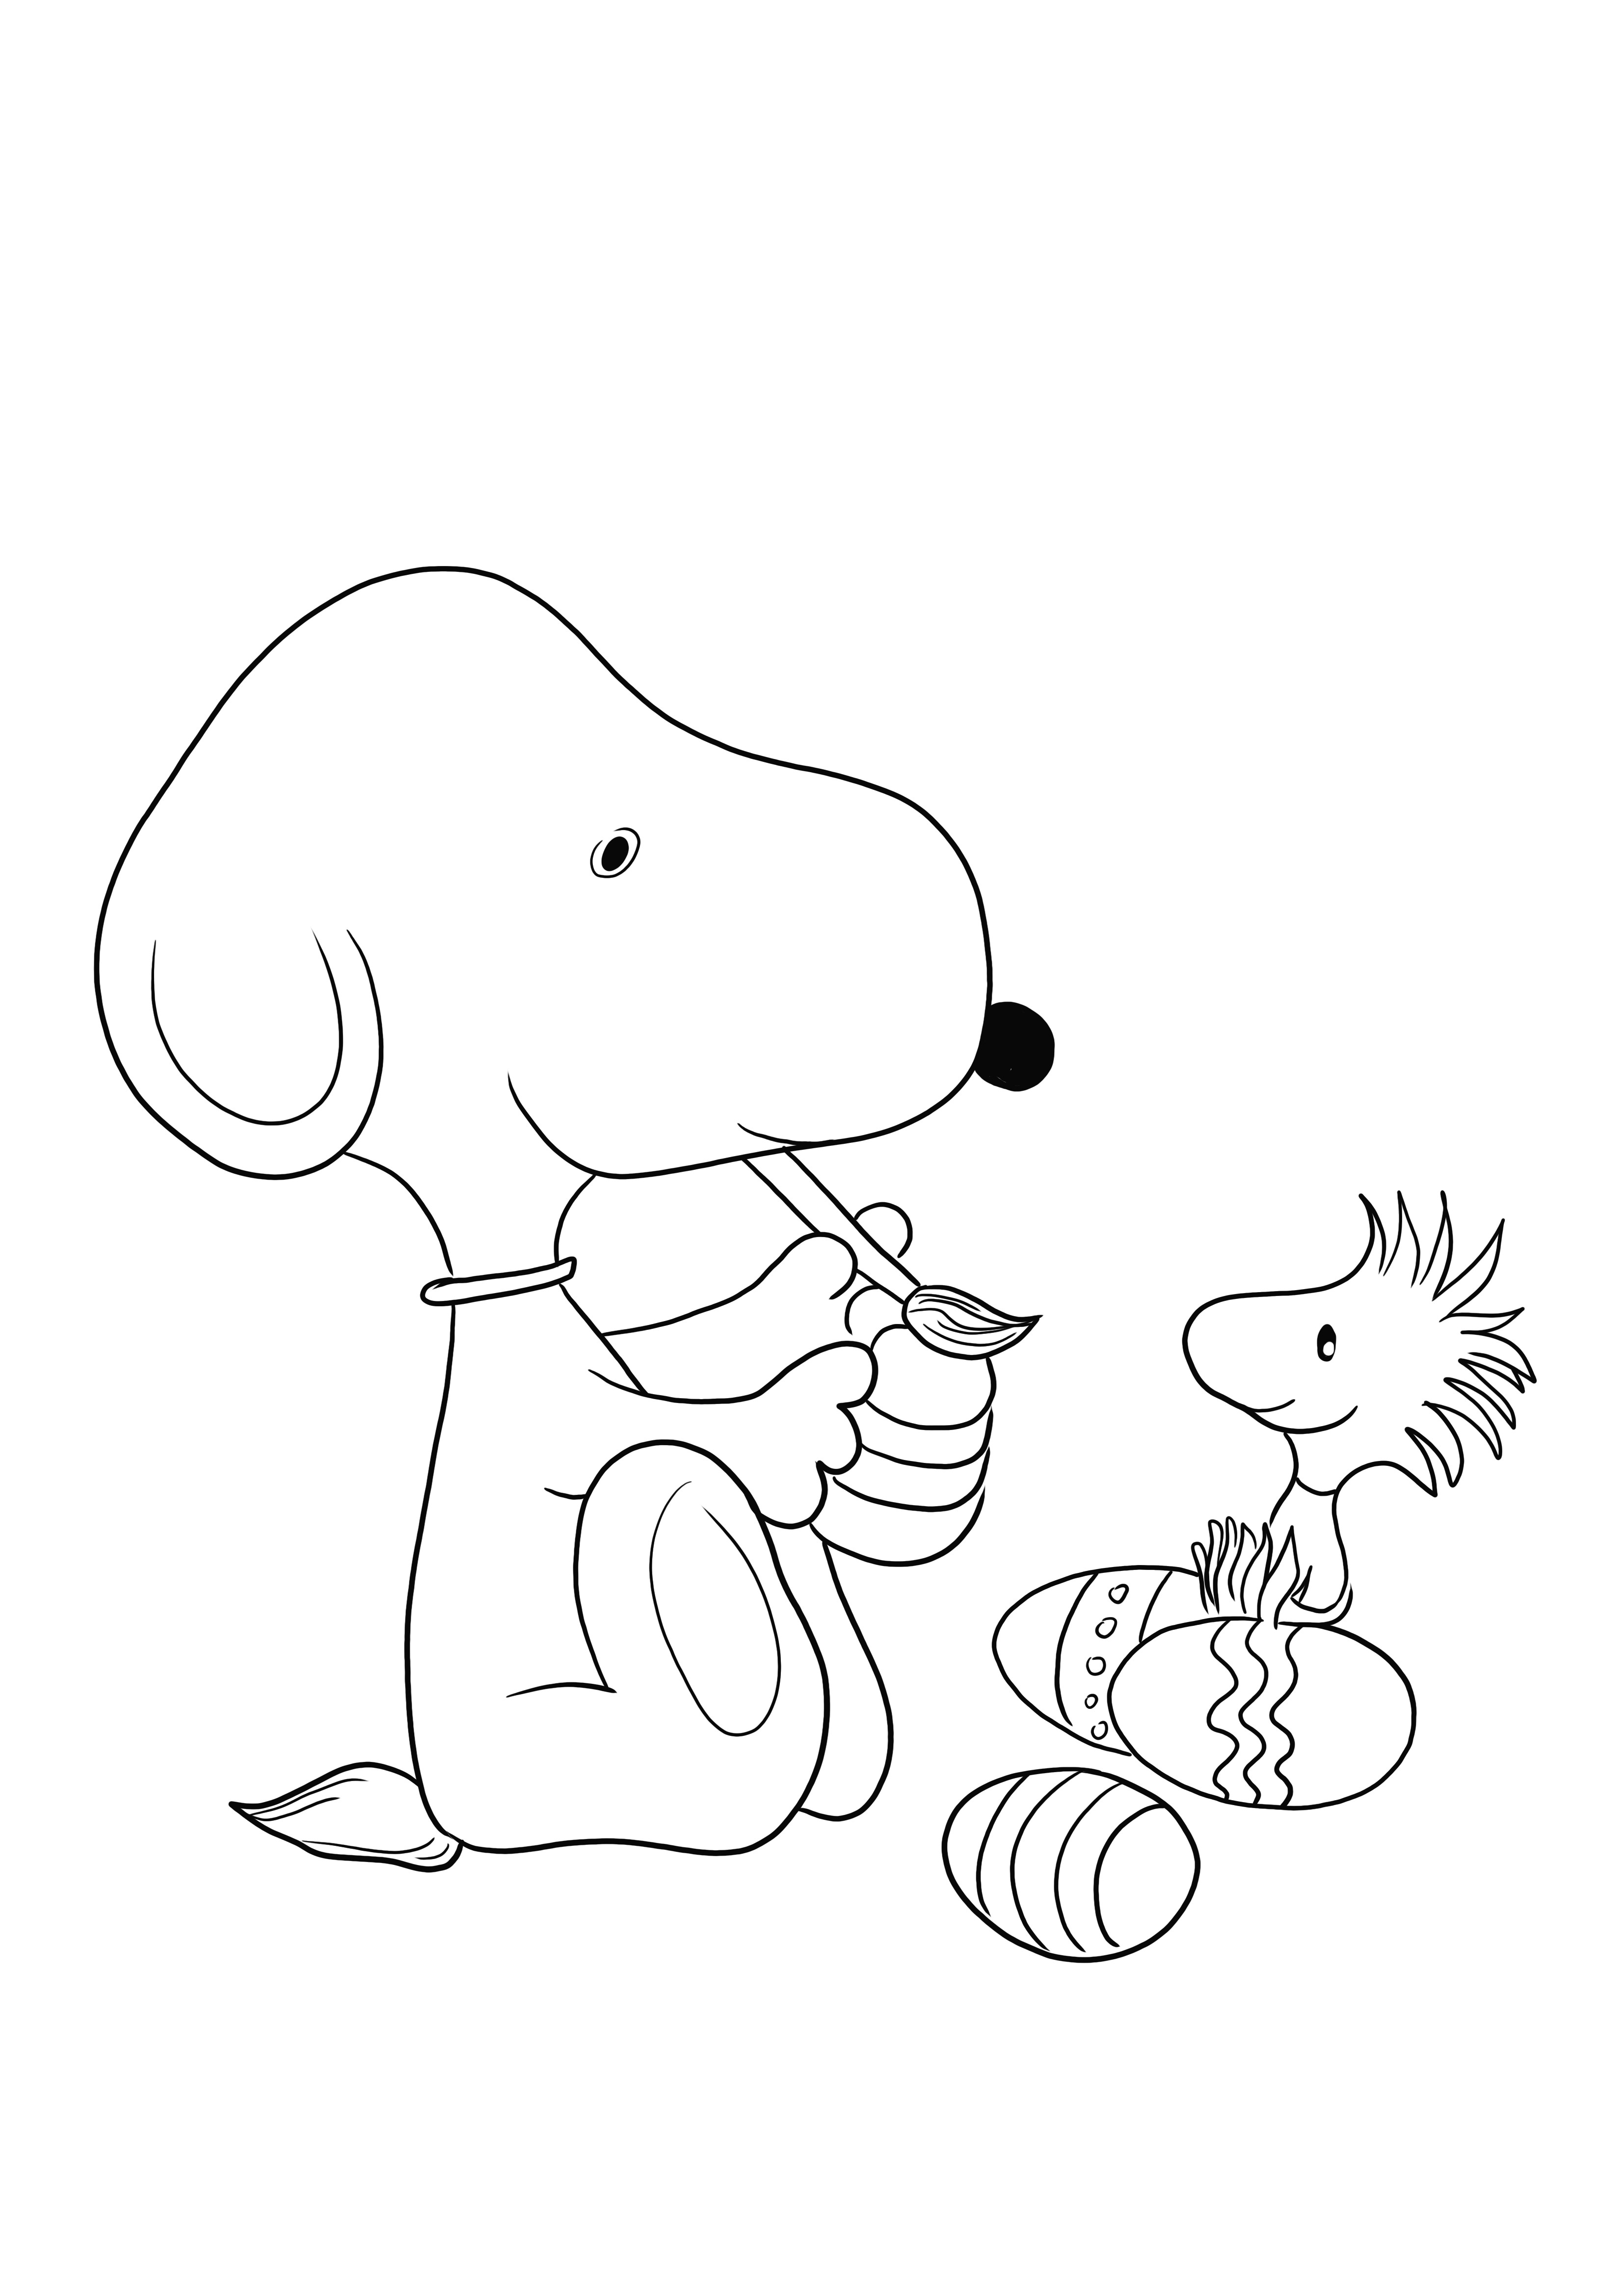 Snoopy dari kartun Peanuts melukis telur Paskah gratis untuk diunduh dan diwarnai gambarnya